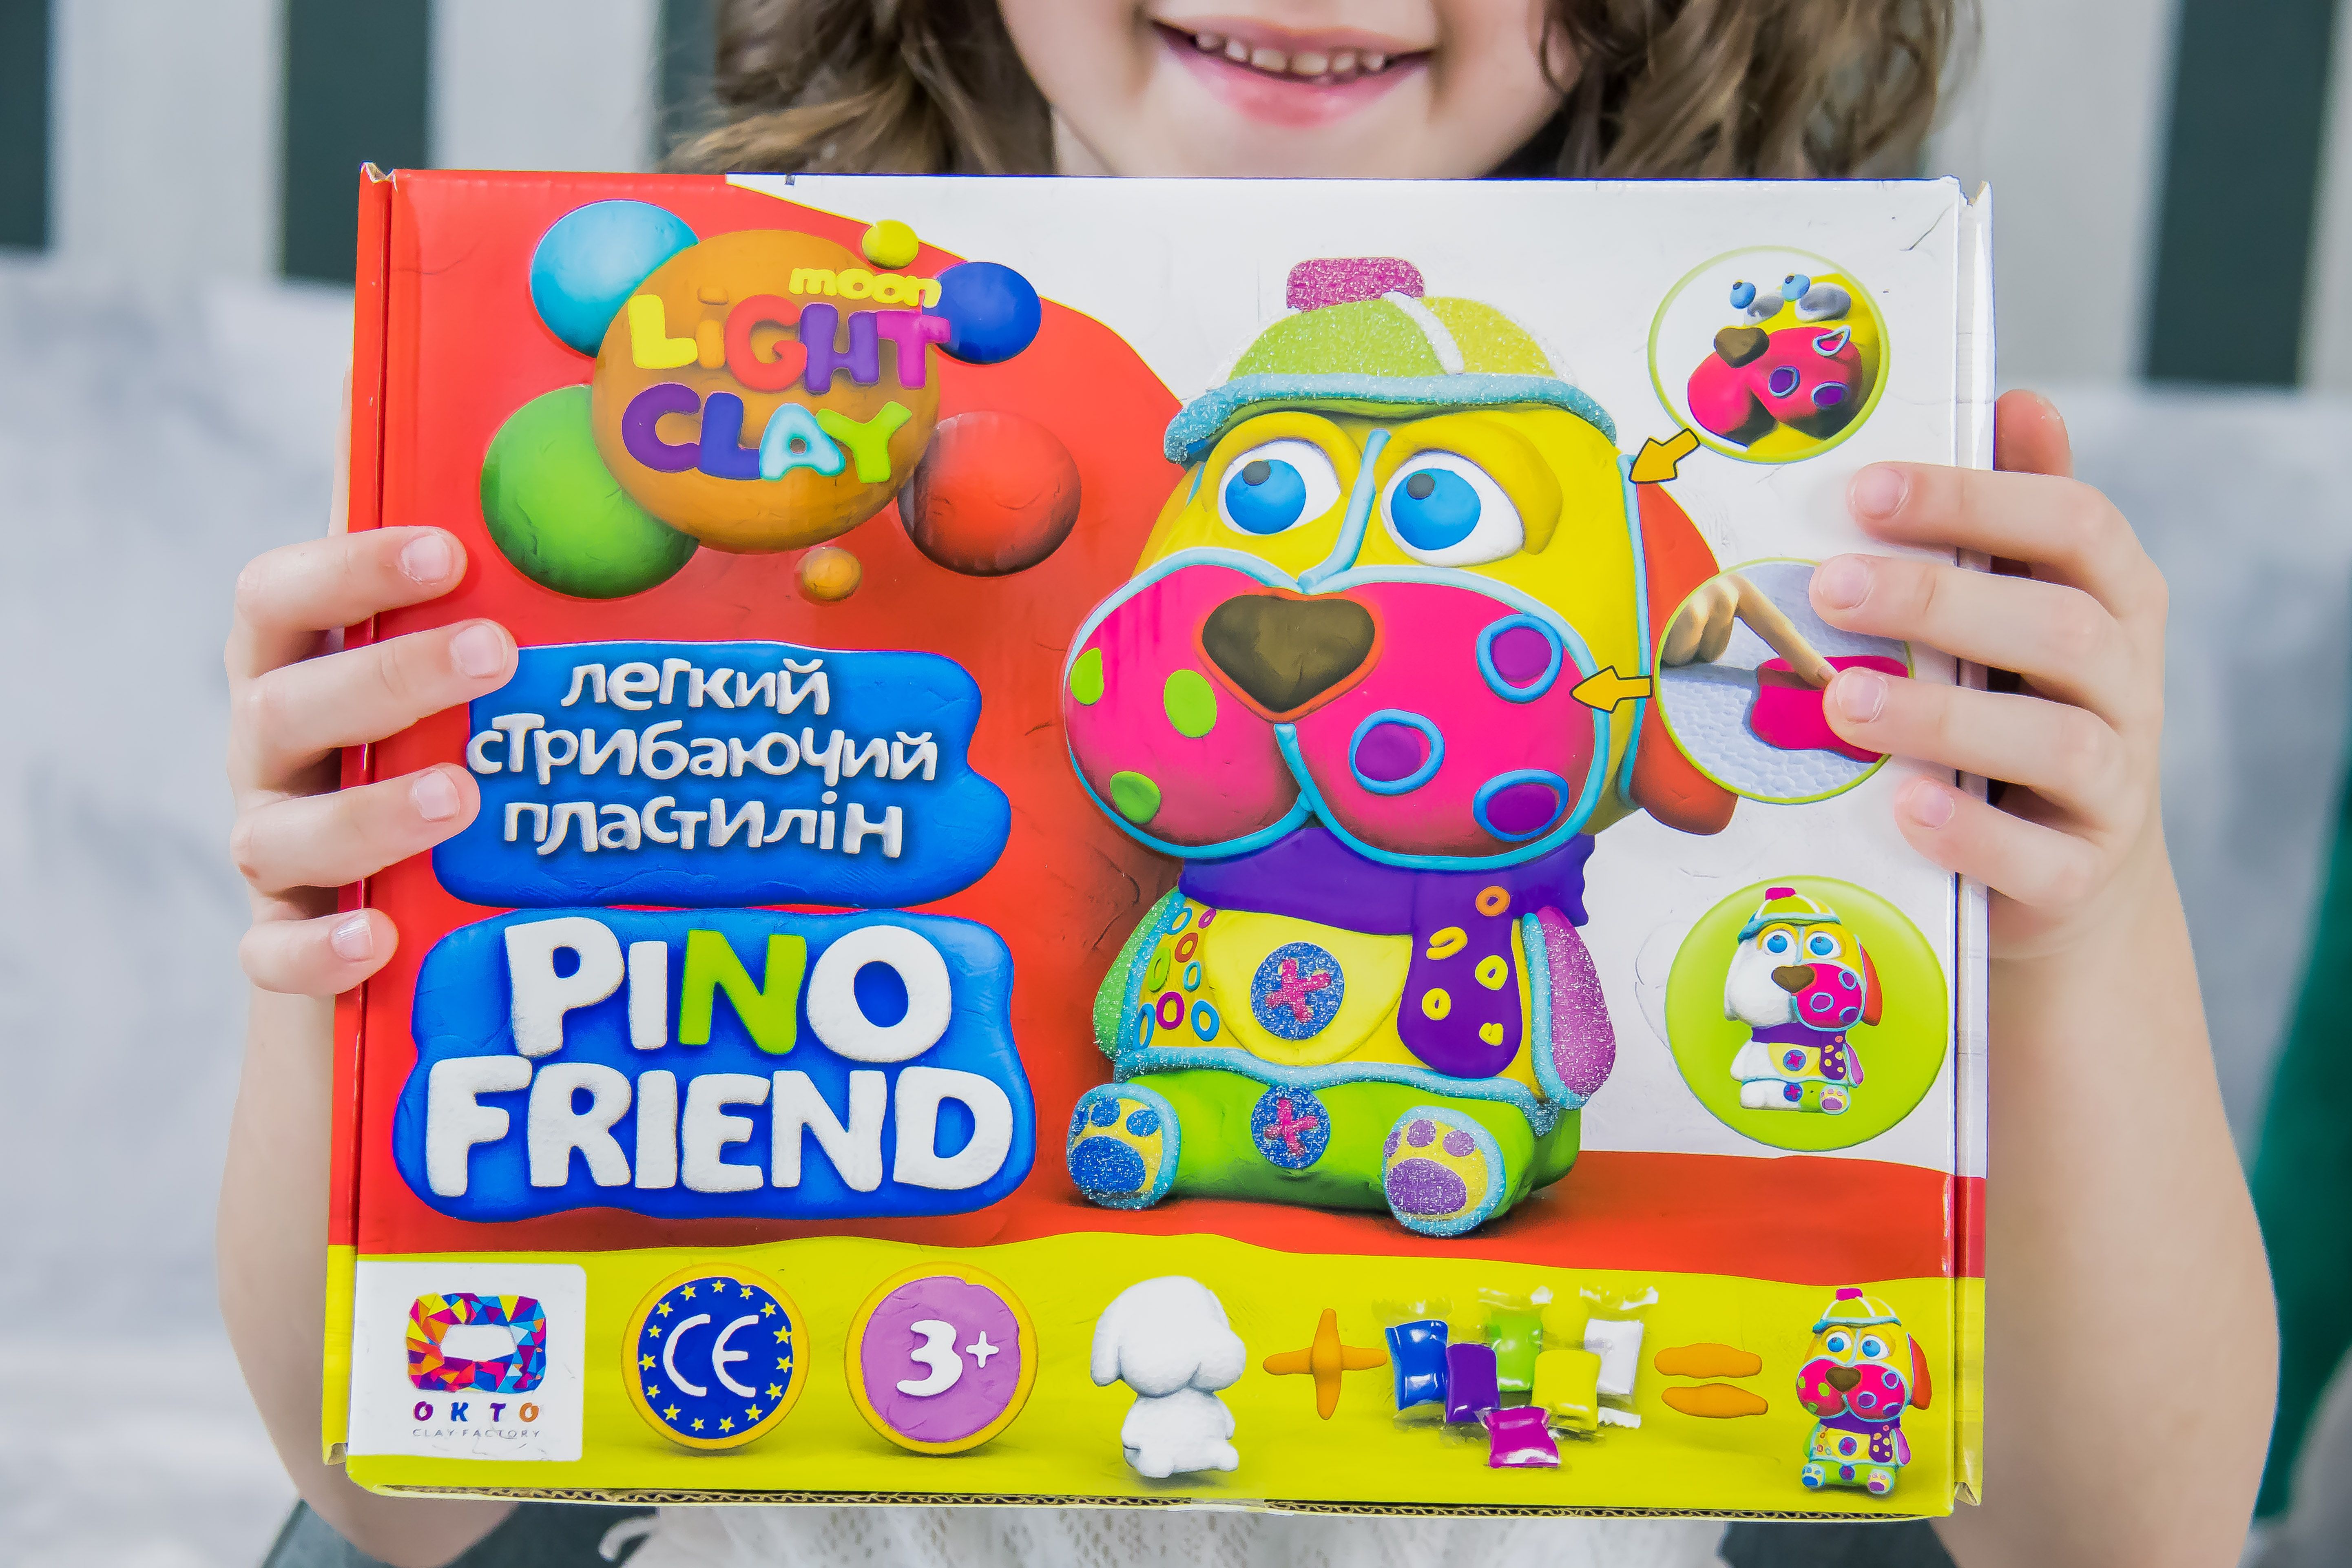  Knete Modellierung Knetmasse Kinder Spielzeug Geschenk Idee Pino Friend Fred